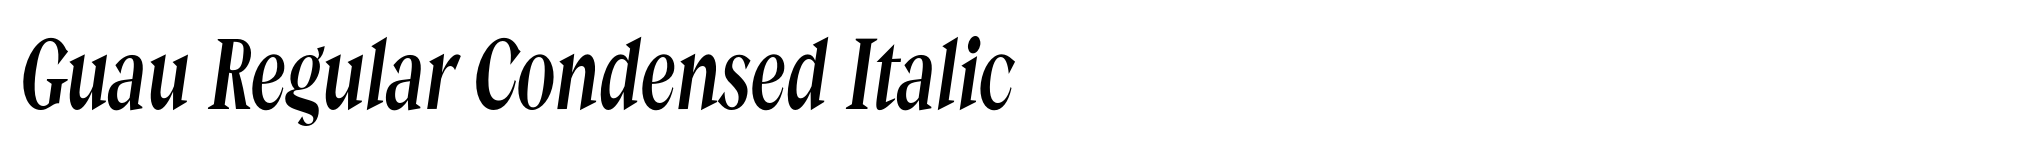 Guau Regular Condensed Italic image